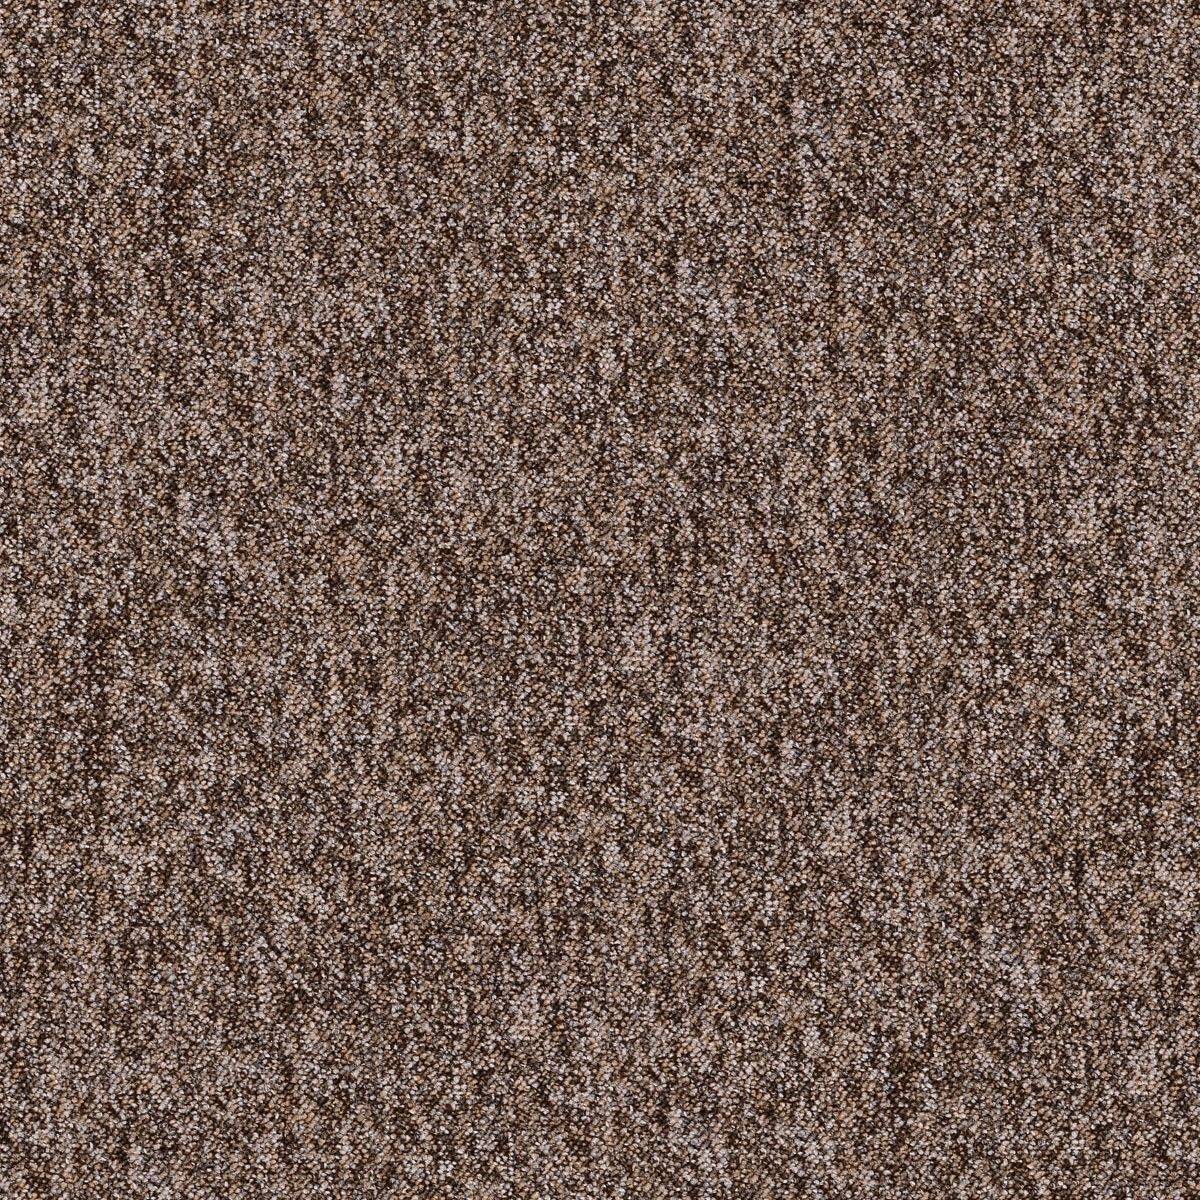 Paragon Toccarre Carpet Tile Montagna